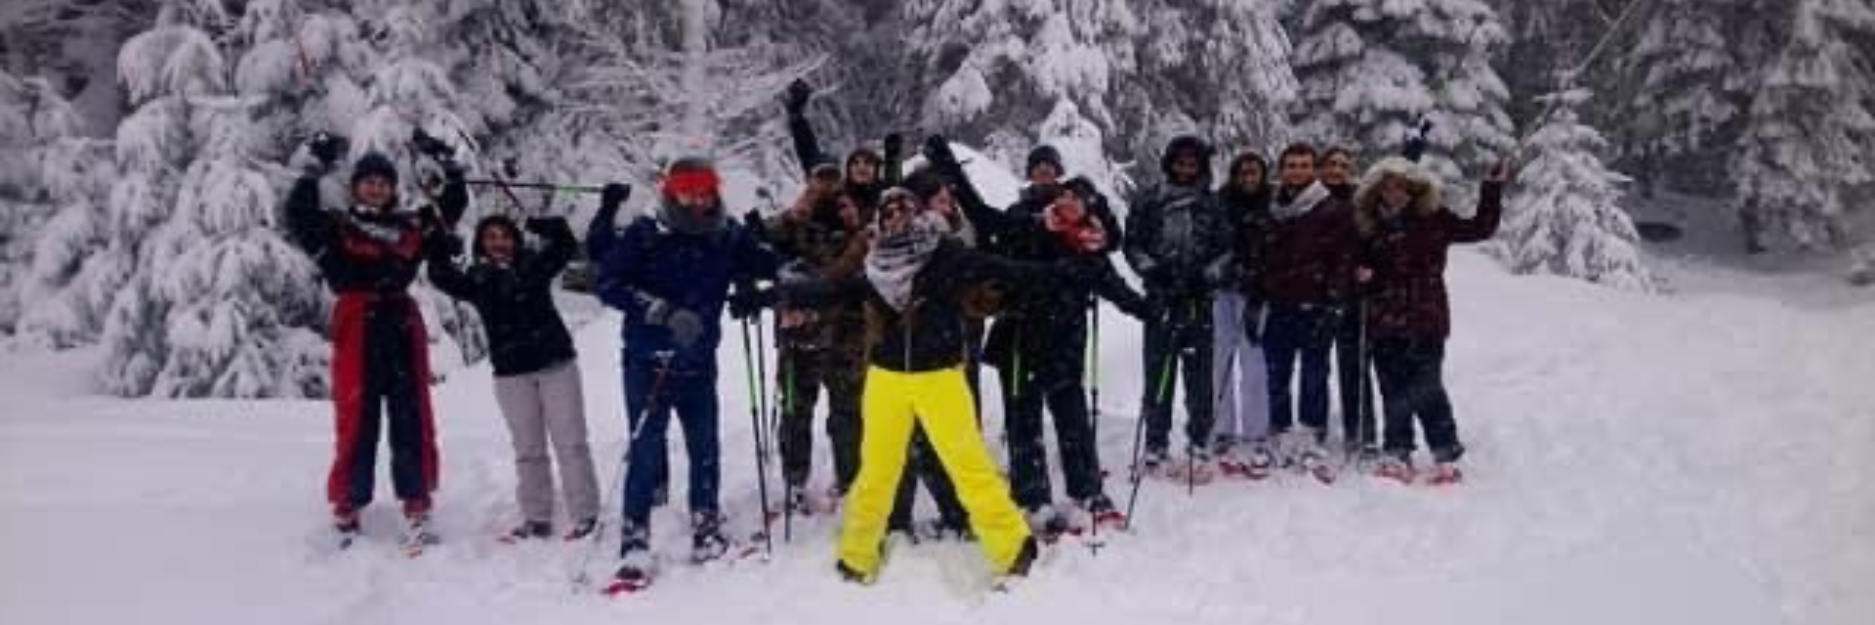 association étudiante photo de groupe de personne au ski